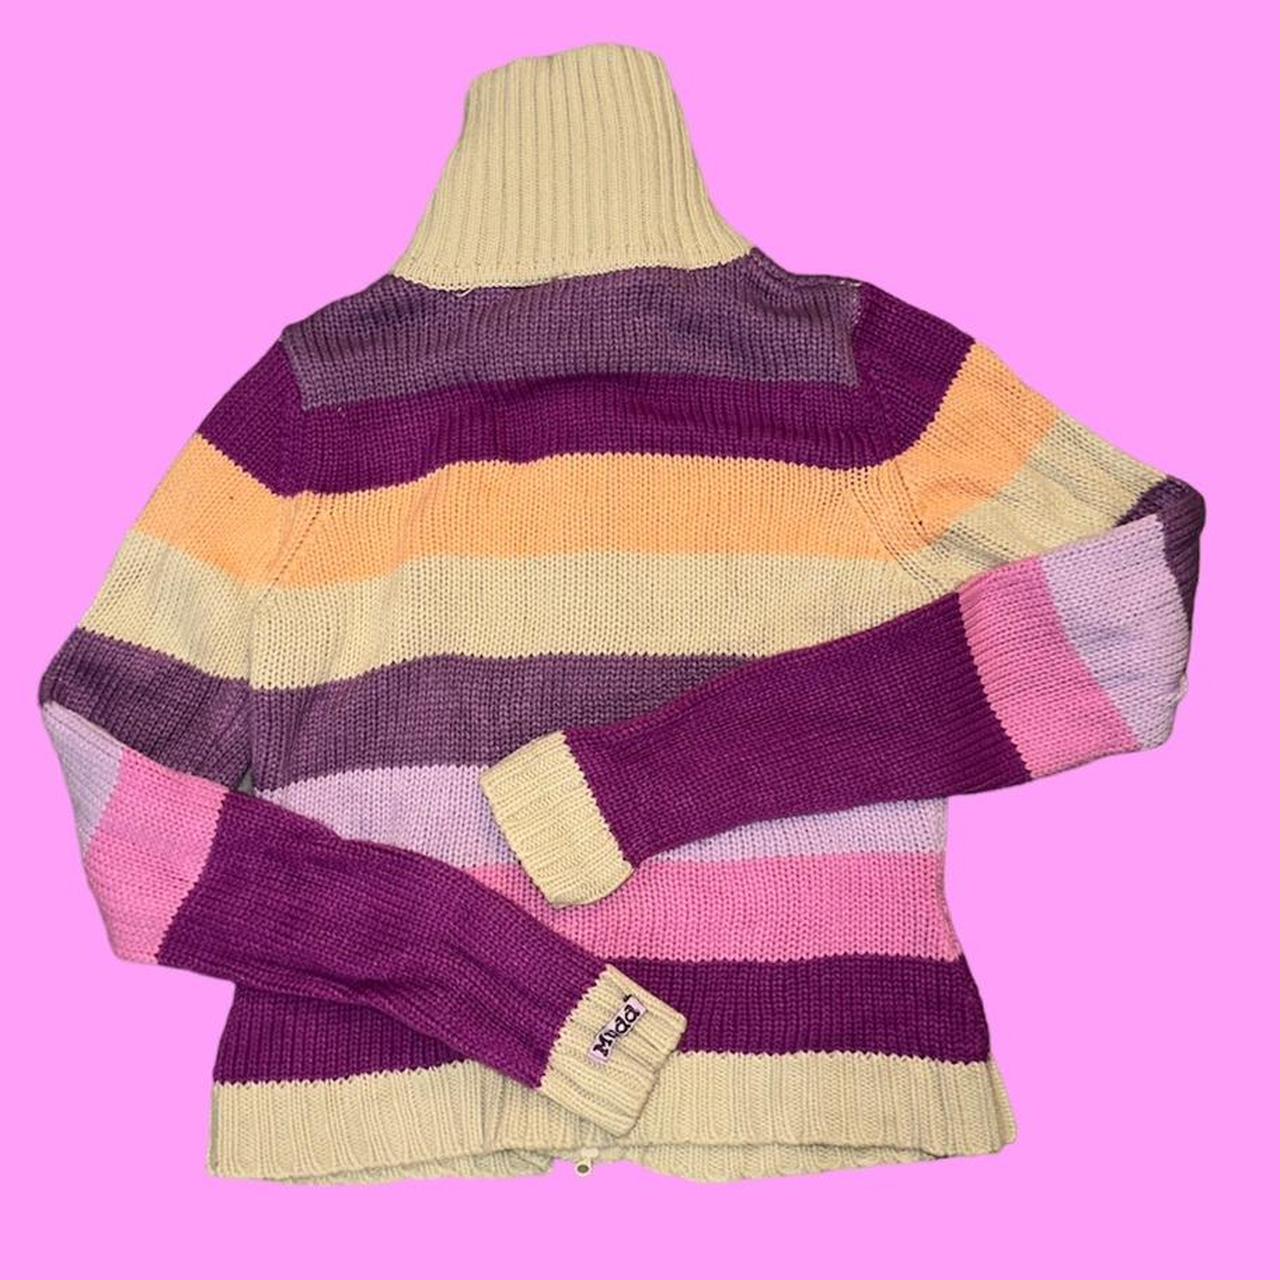 MUDD zip up sweater super cute n cozy size M - Depop